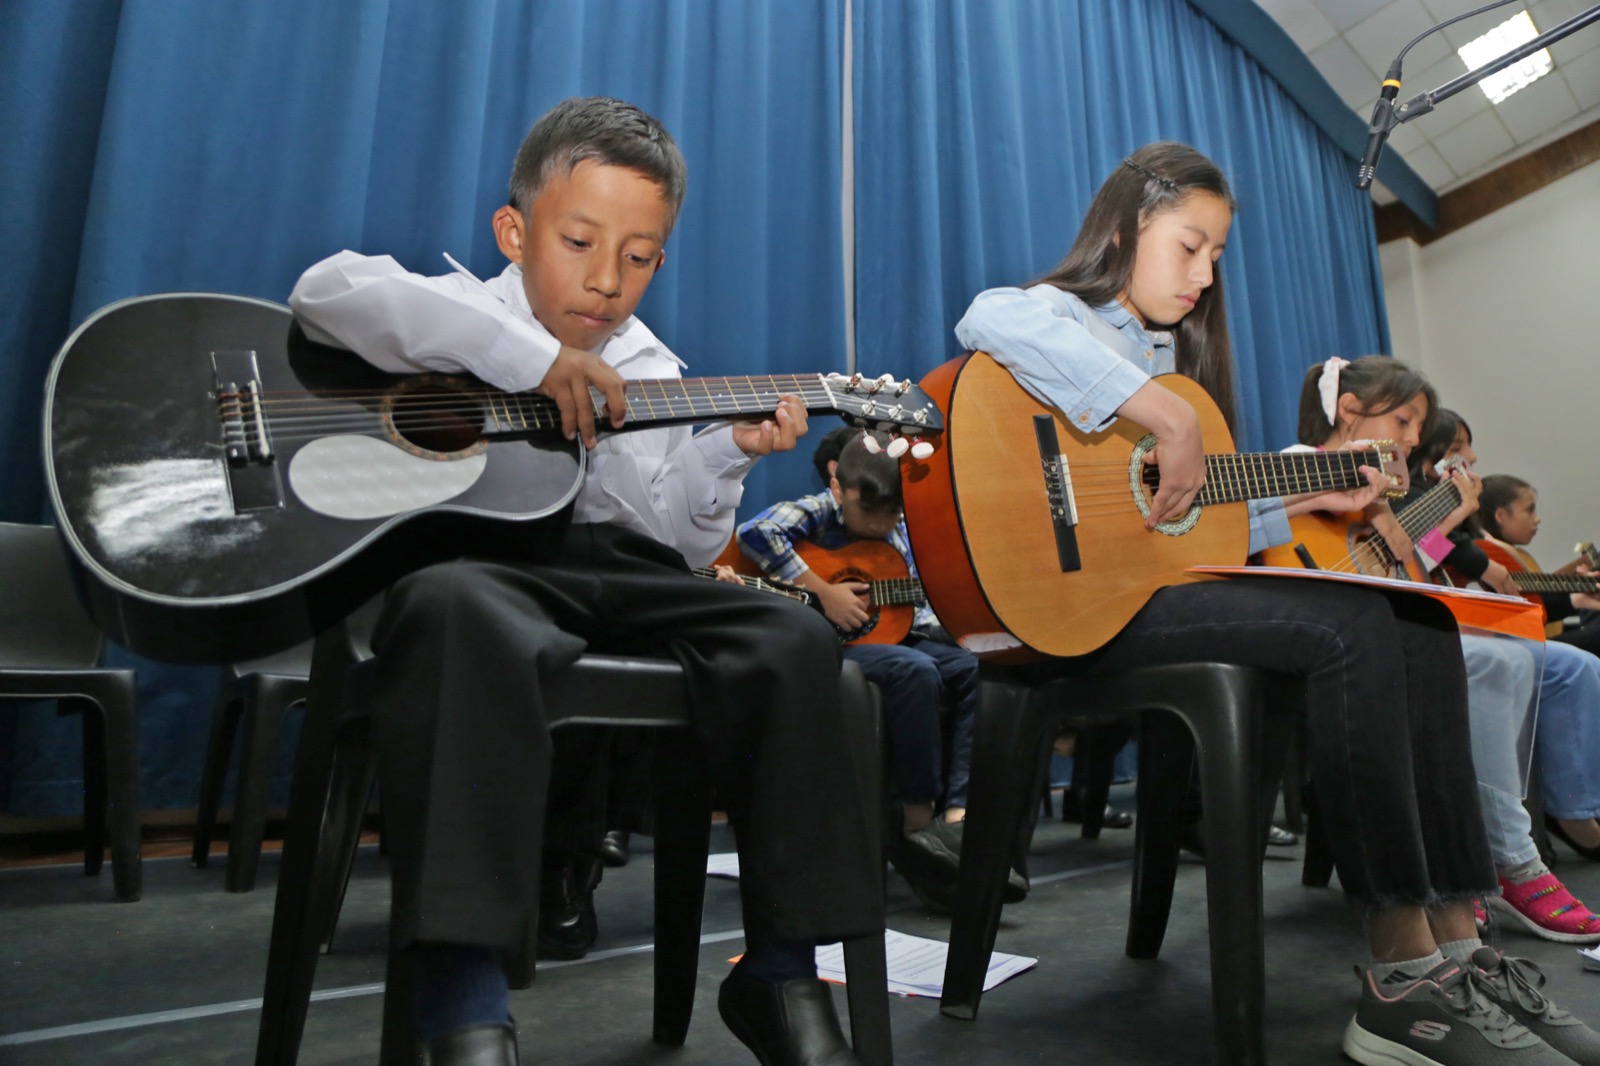 Guitarra, ballet y canto son algunos de los talleres disponibles.